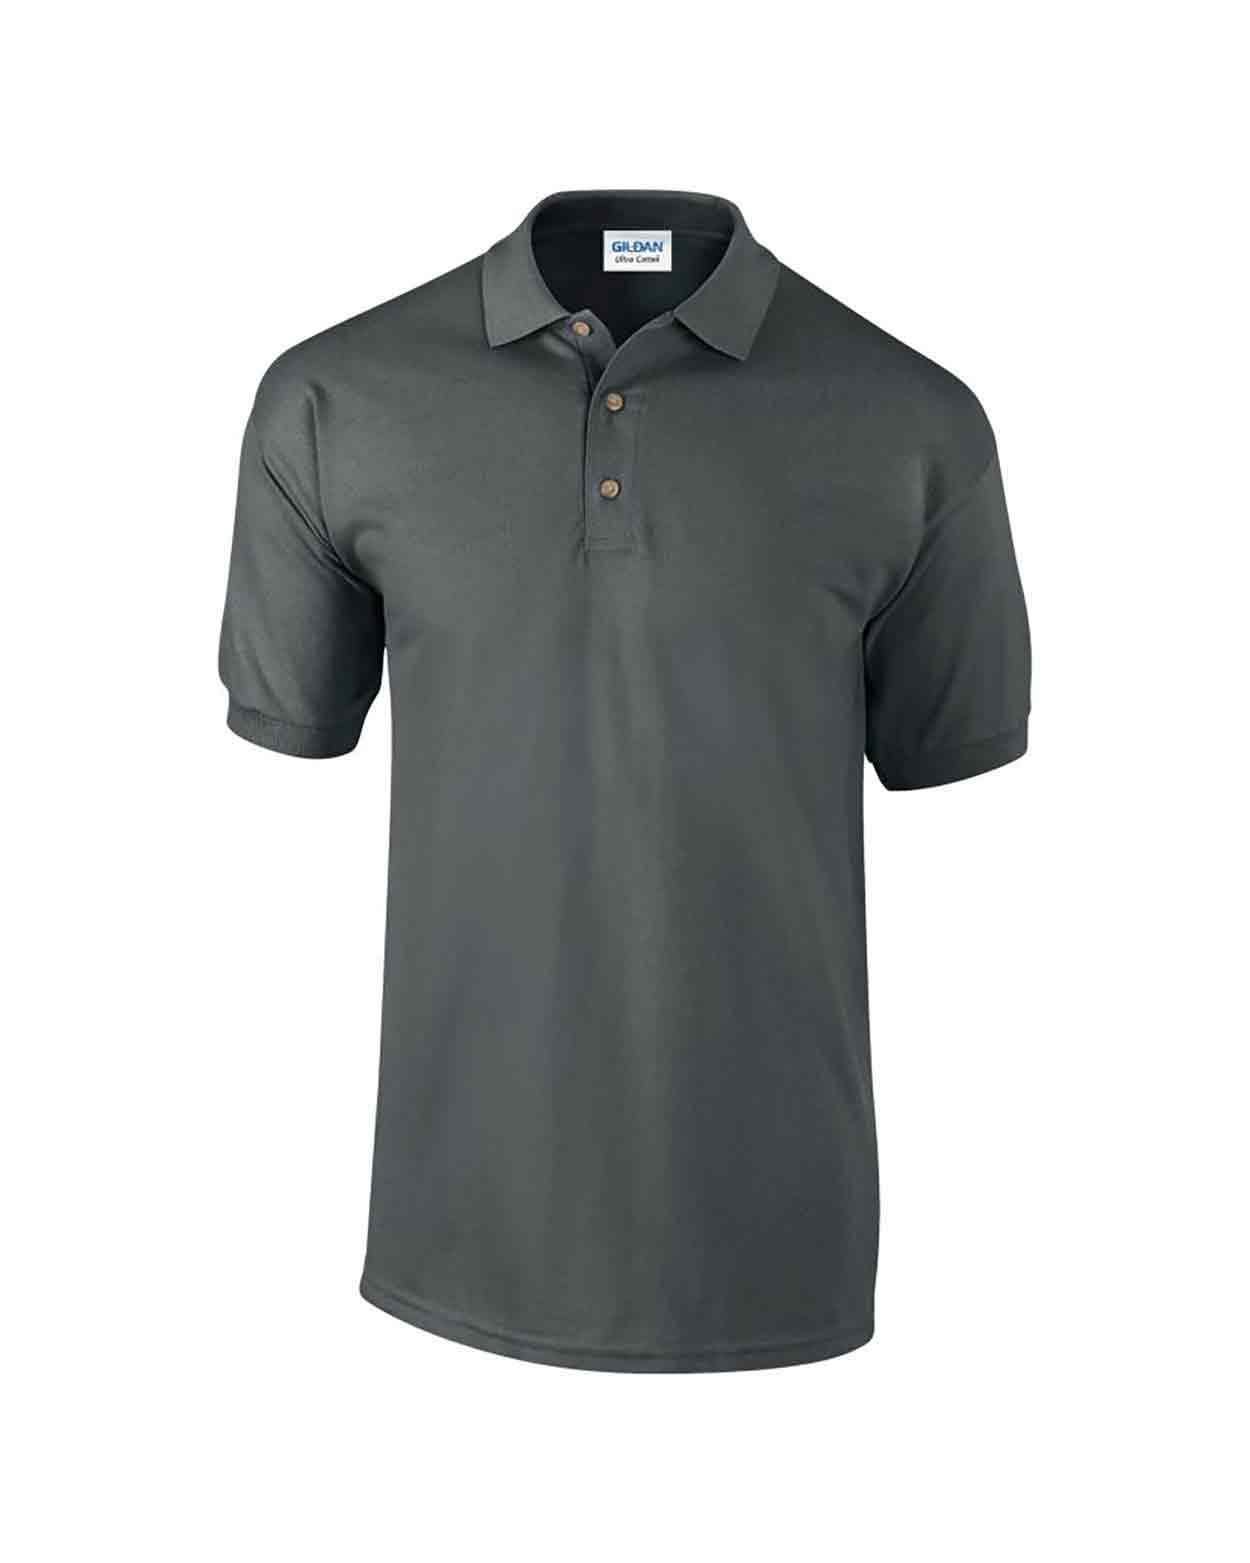 Gildan GD38 Ultra Cotton Pique Polo Shirt - Plain Cotton Polos - Cotton Polo  Shirts - Mens Polo Shirts - Polo Shirts - Leisurewear - Best Workwear